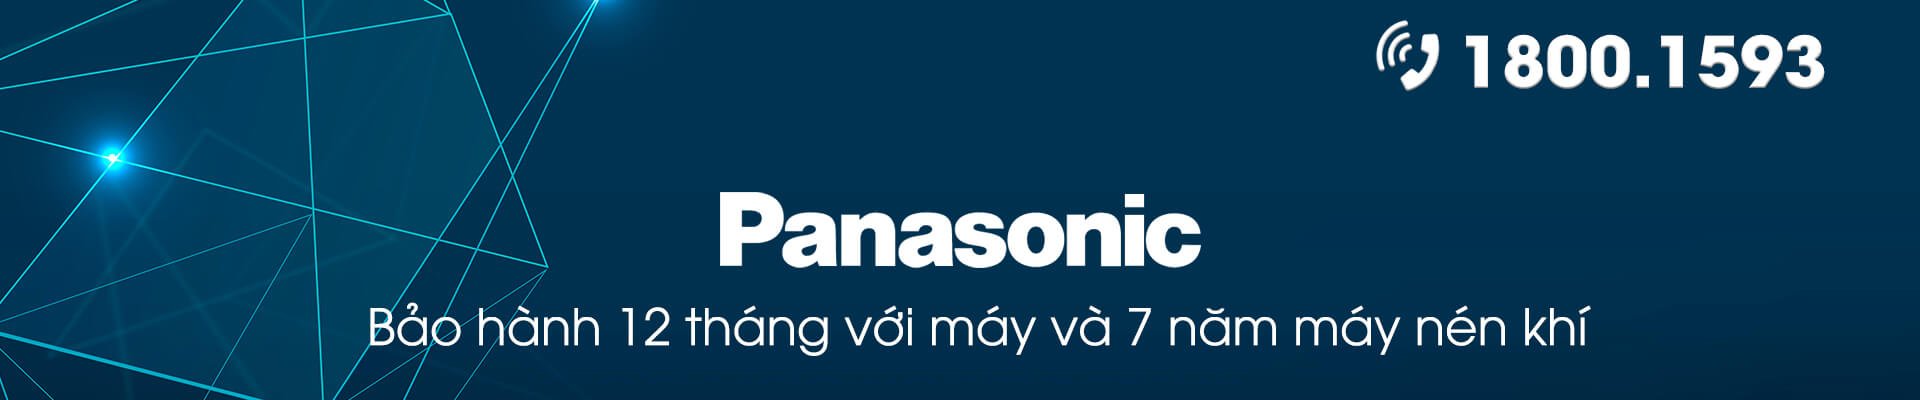 Bảo hành điều hòa Panasonic